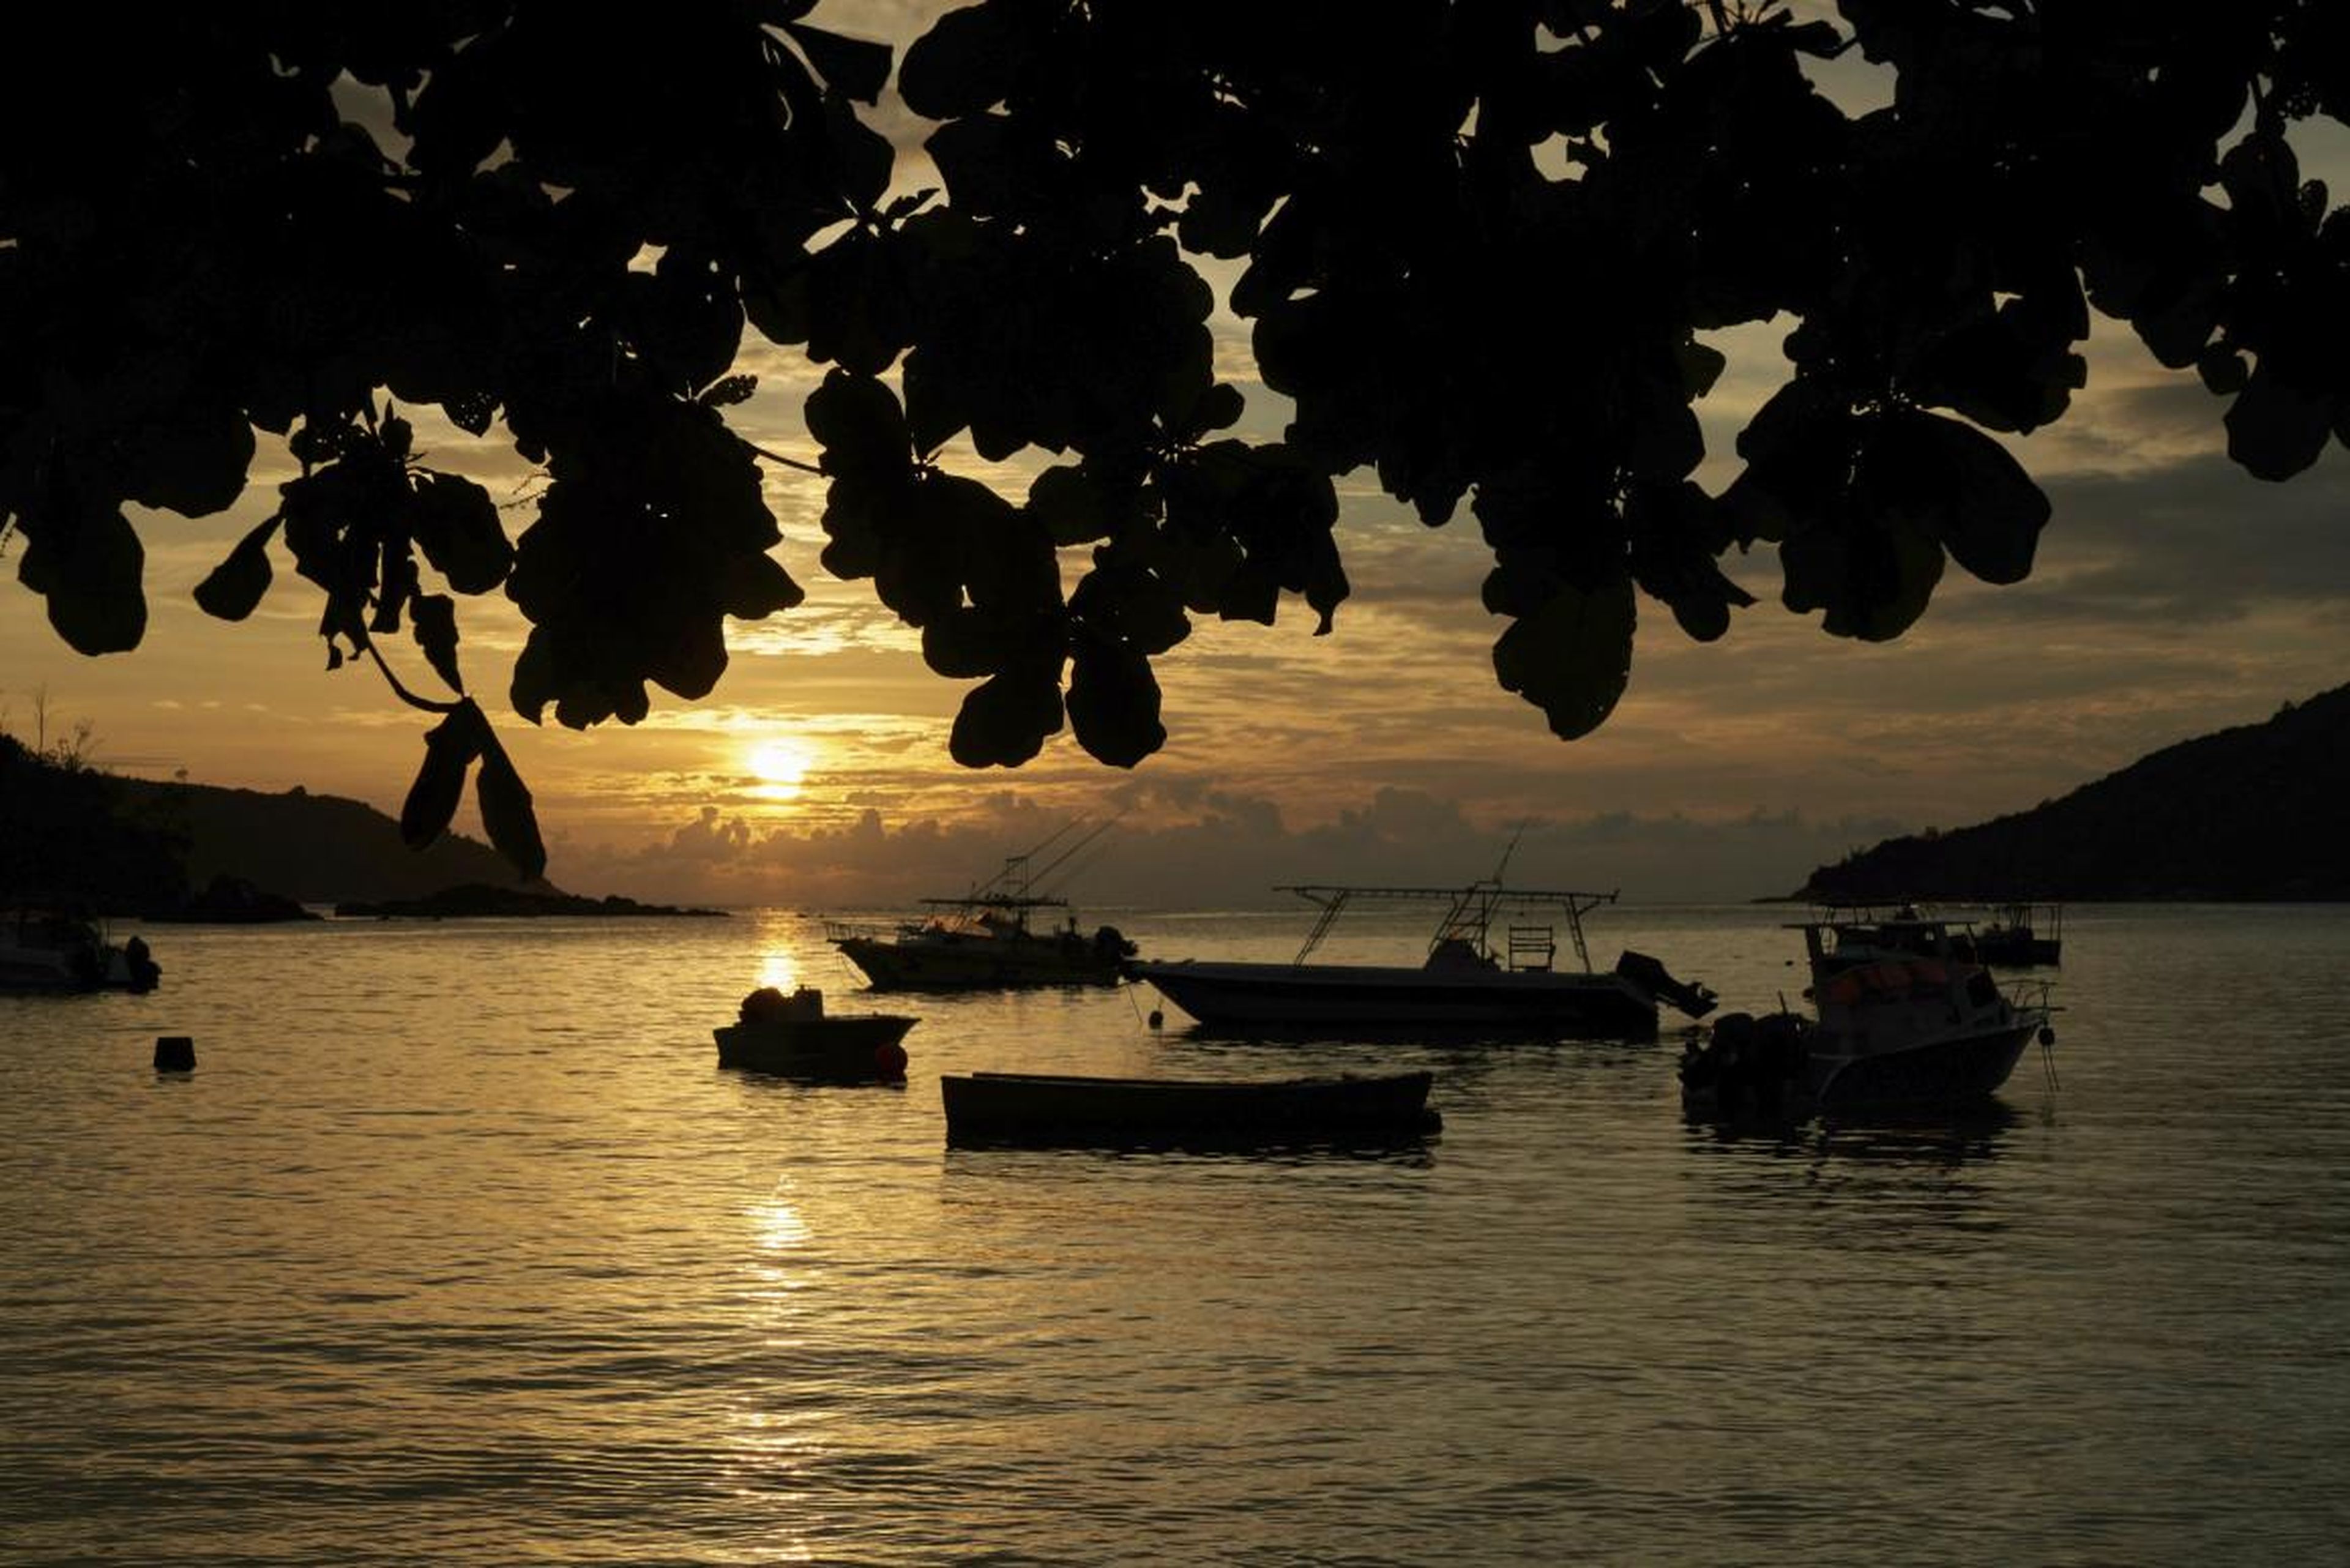 El sol se pone sobre una pequeña bahía pesquera con embarcaciones de recreo cerca de la isla de Mahe, Seychelles.